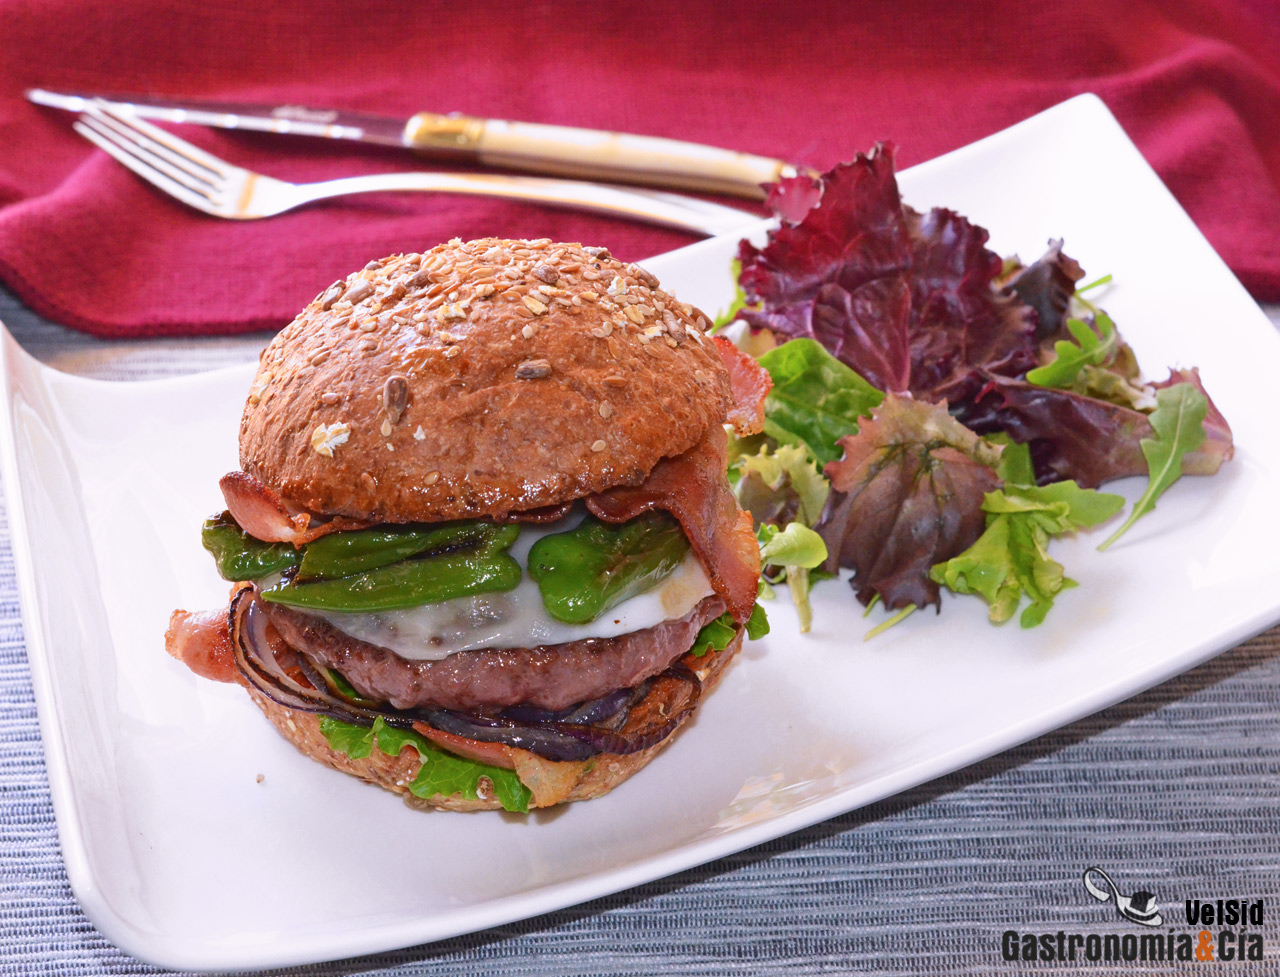 Hamburguesa de angus con queso de oveja y pimientos de Padrón, una delicia gourmet  para comer en casa | Gastronomía & Cía